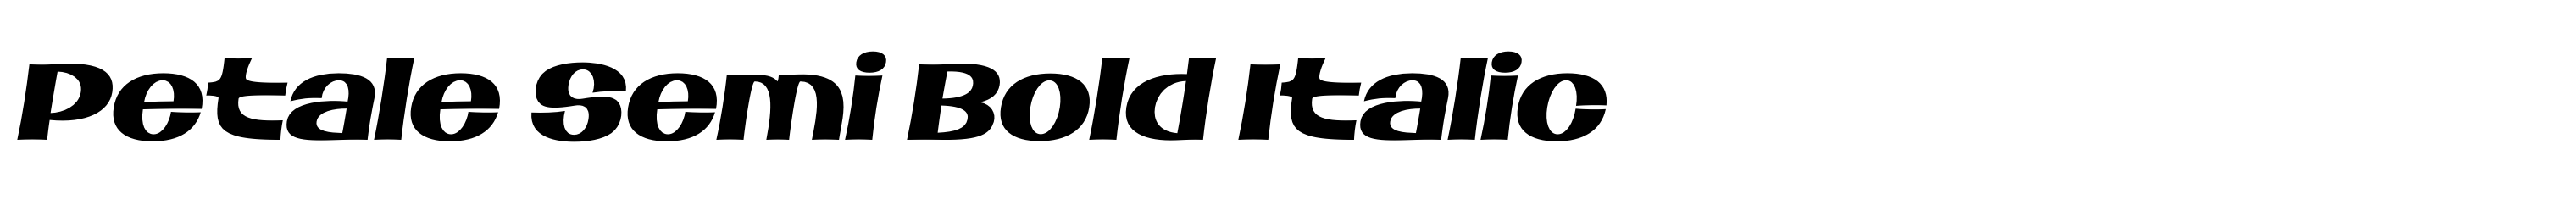 Petale Semi Bold Italic